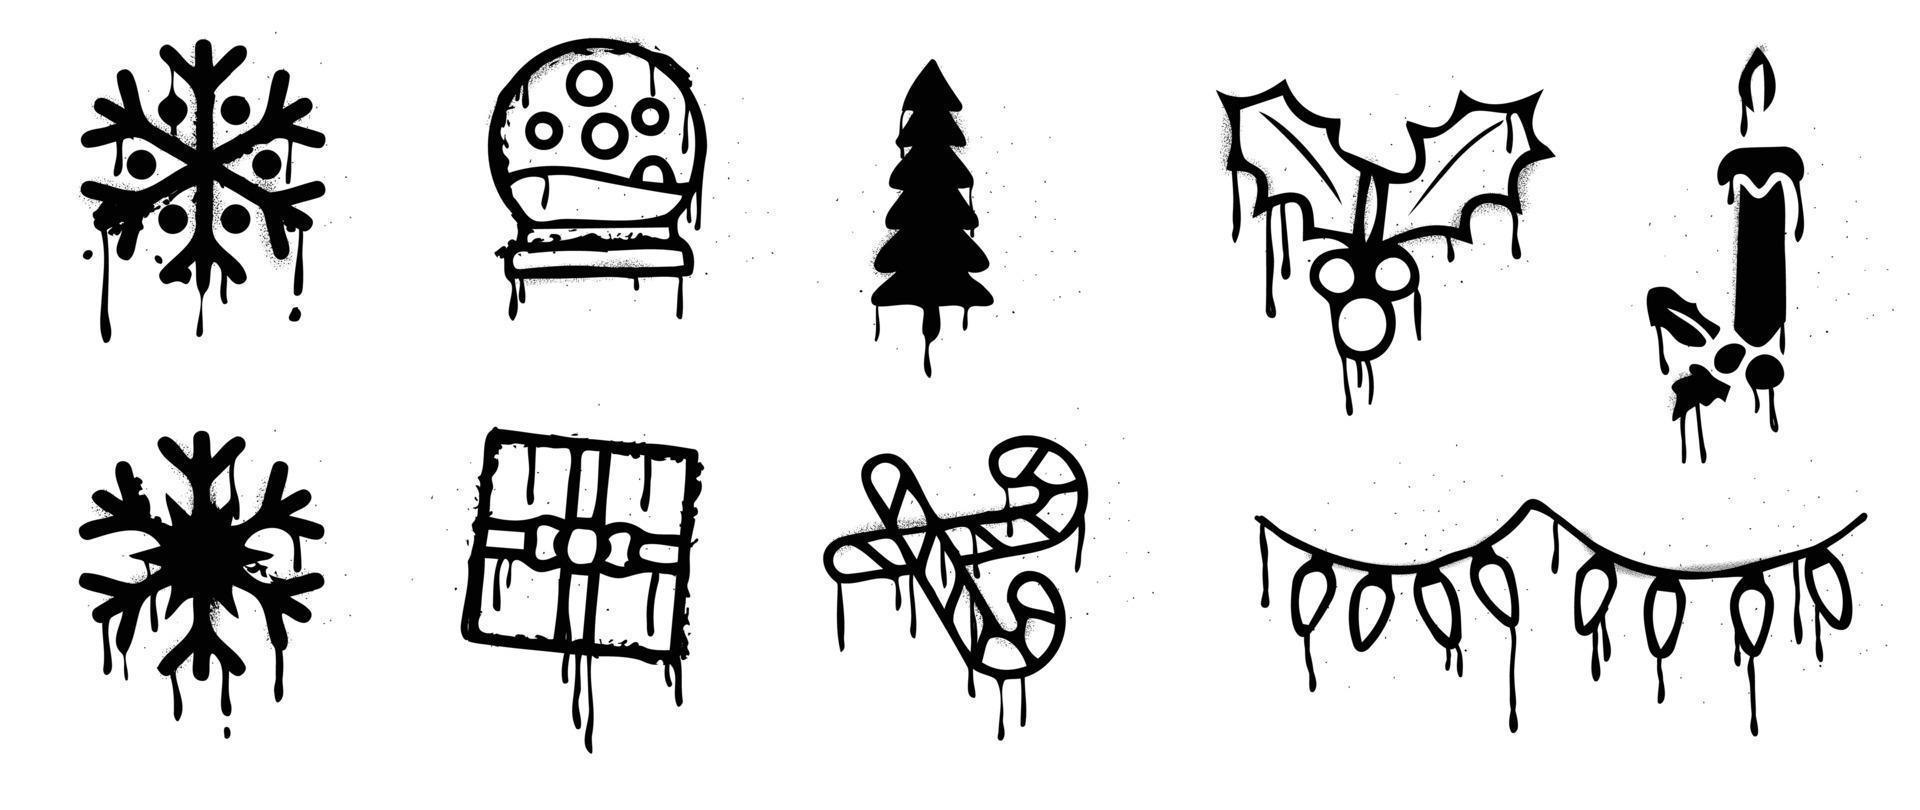 uppsättning av jul element spray måla vektor. graffiti, grunge element av tall träd, snöflinga, kristall snöboll, järnek, gåva på vit bakgrund. design illustration för dekoration, kort, klistermärke. vektor